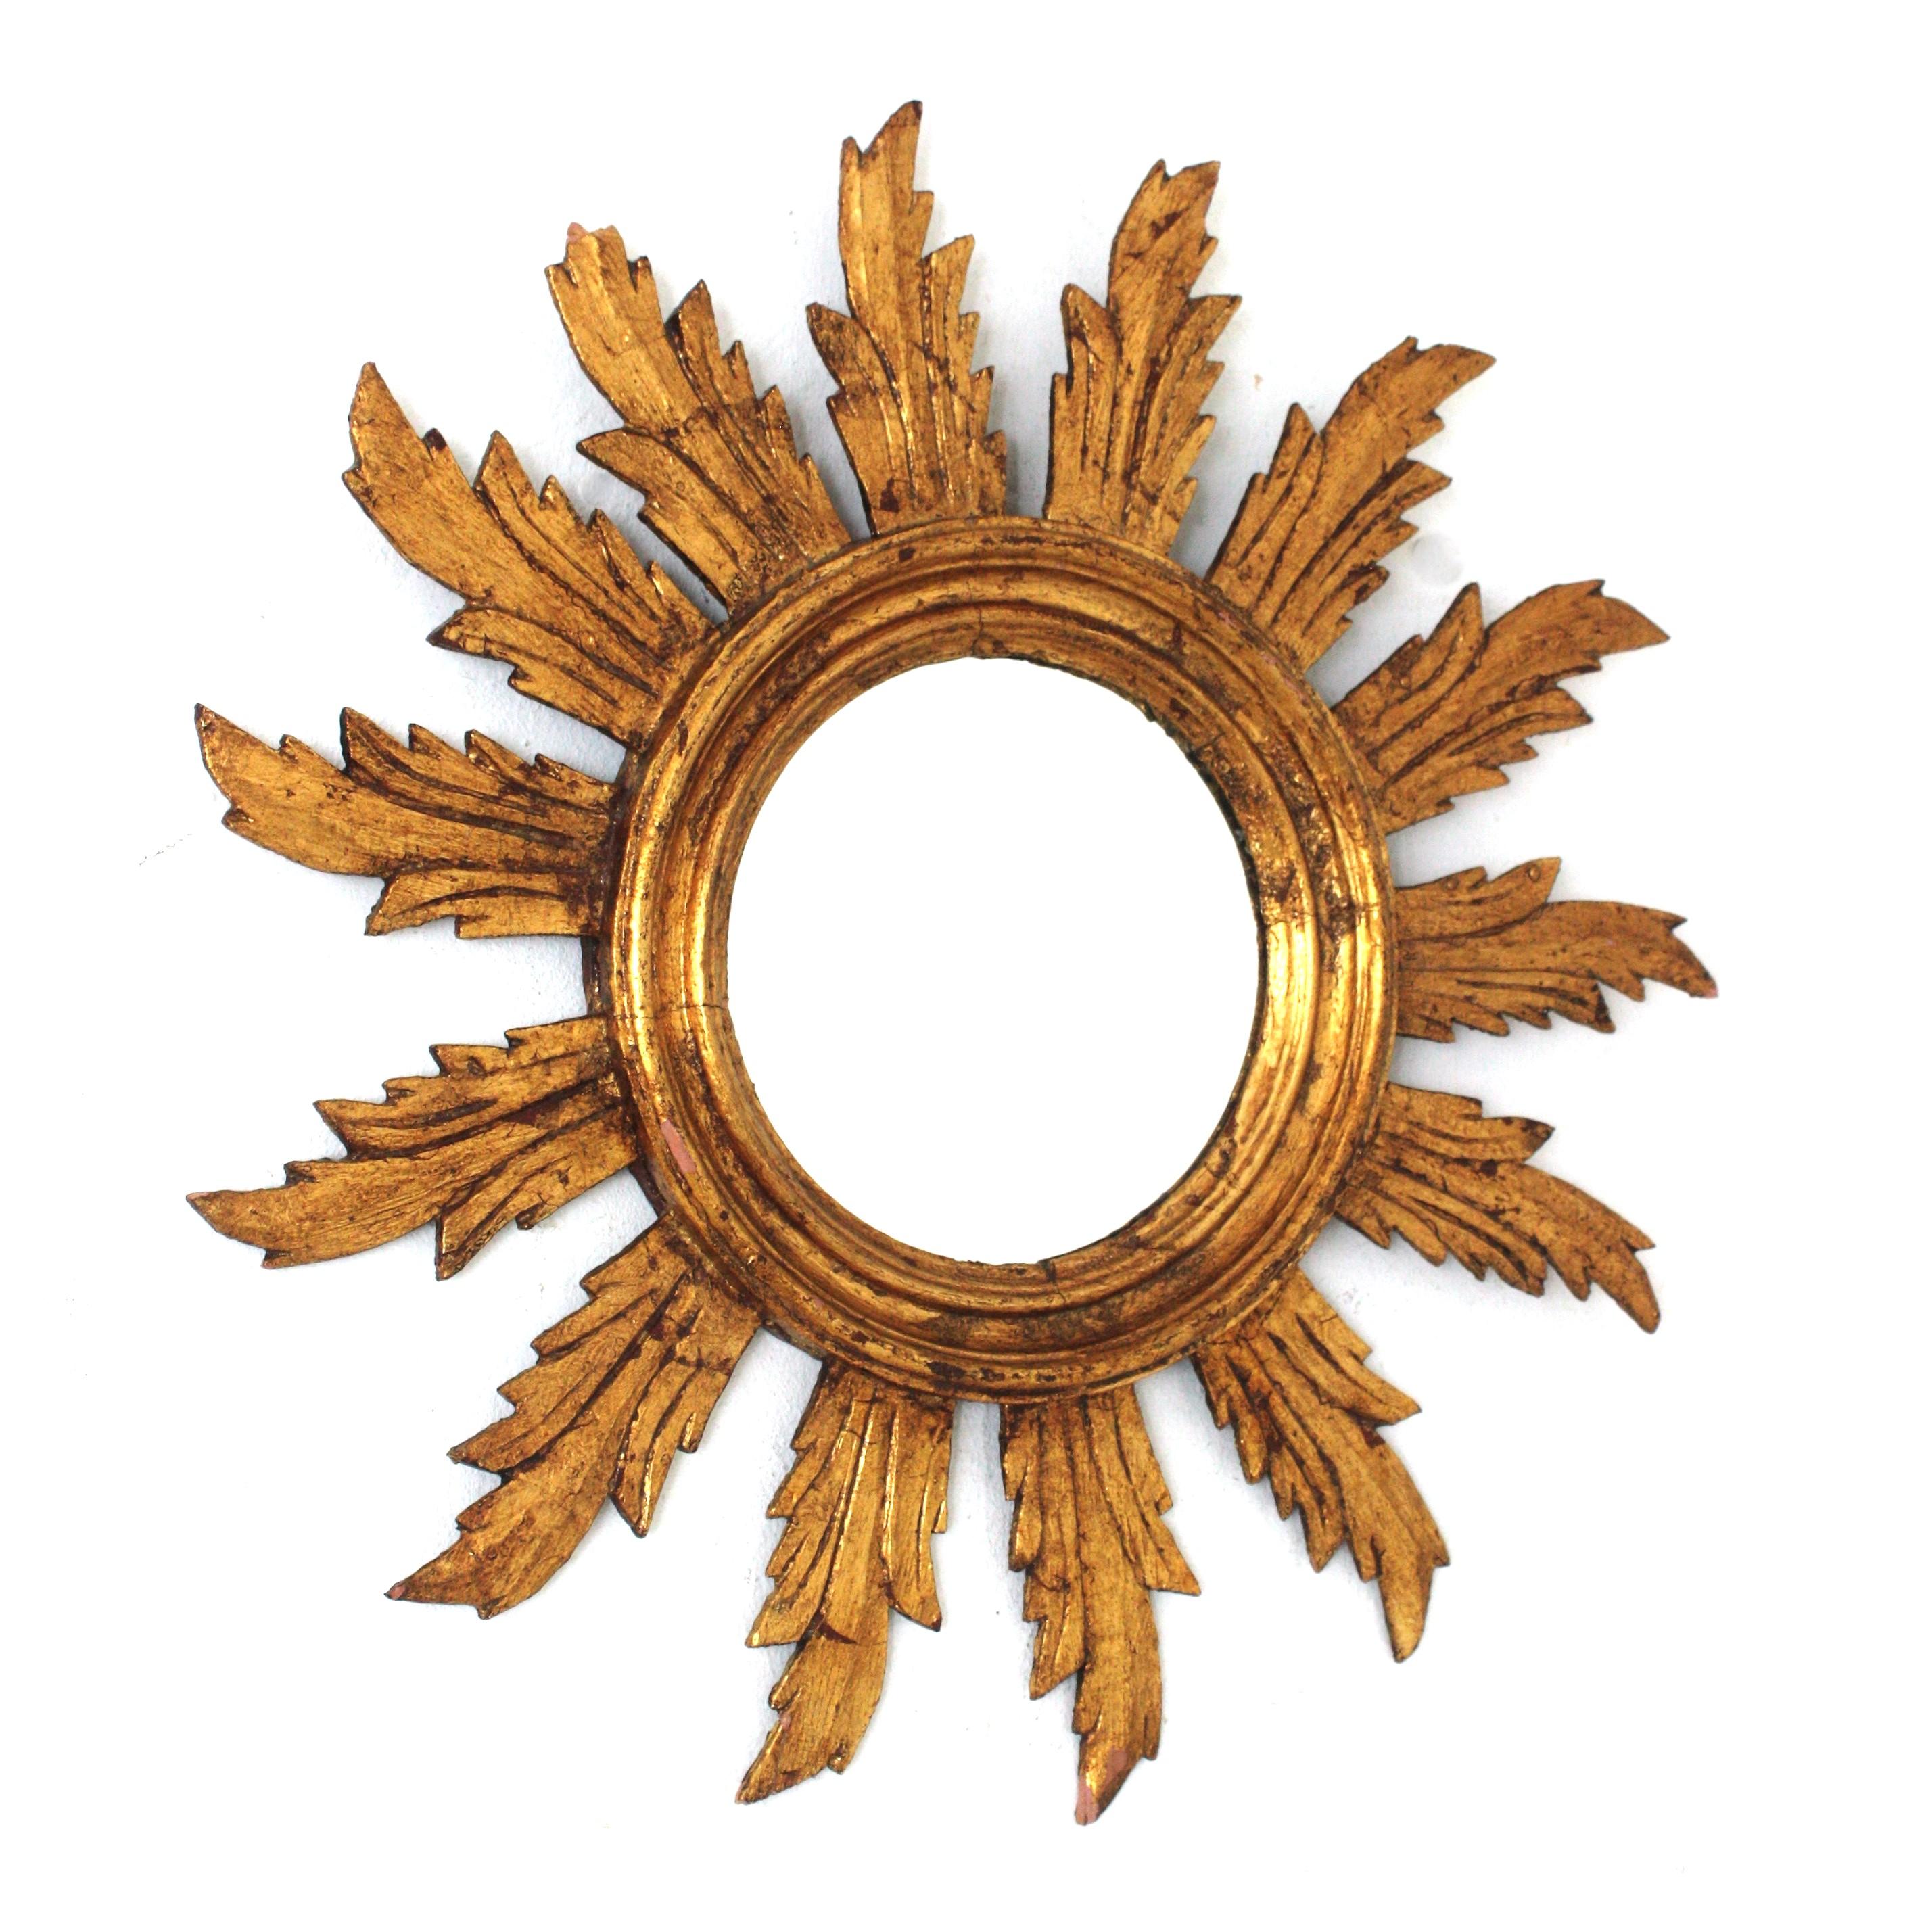 Auffälliger geschnitzter Spiegel aus vergoldetem spanischem Sonnenschliff, 1940er-1950er Jahre.
Dieser Spiegel mit Sonnenschliff hat einen runden Rahmen aus Holz, der das runde Glas umgibt. Eine Schicht von Strahlen mit geschwungenen Details mit